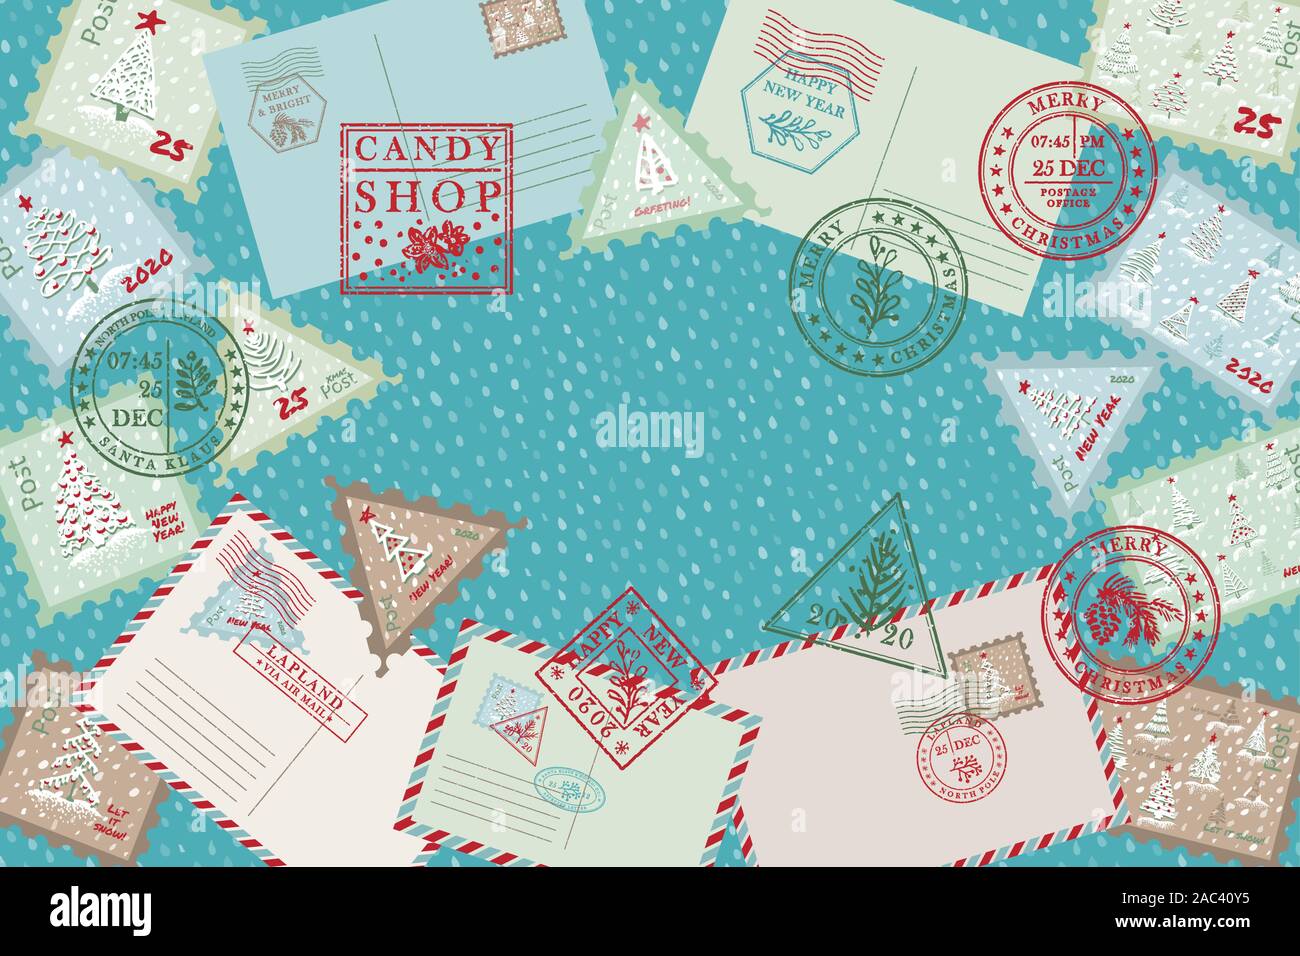 Feier Hintergrund mit Vintage Air Mail Postkarte und Umschlag, strukturierte grunge Weihnachten porto Stempel Weihnachten Urlaub Symbole in Stock Vektor